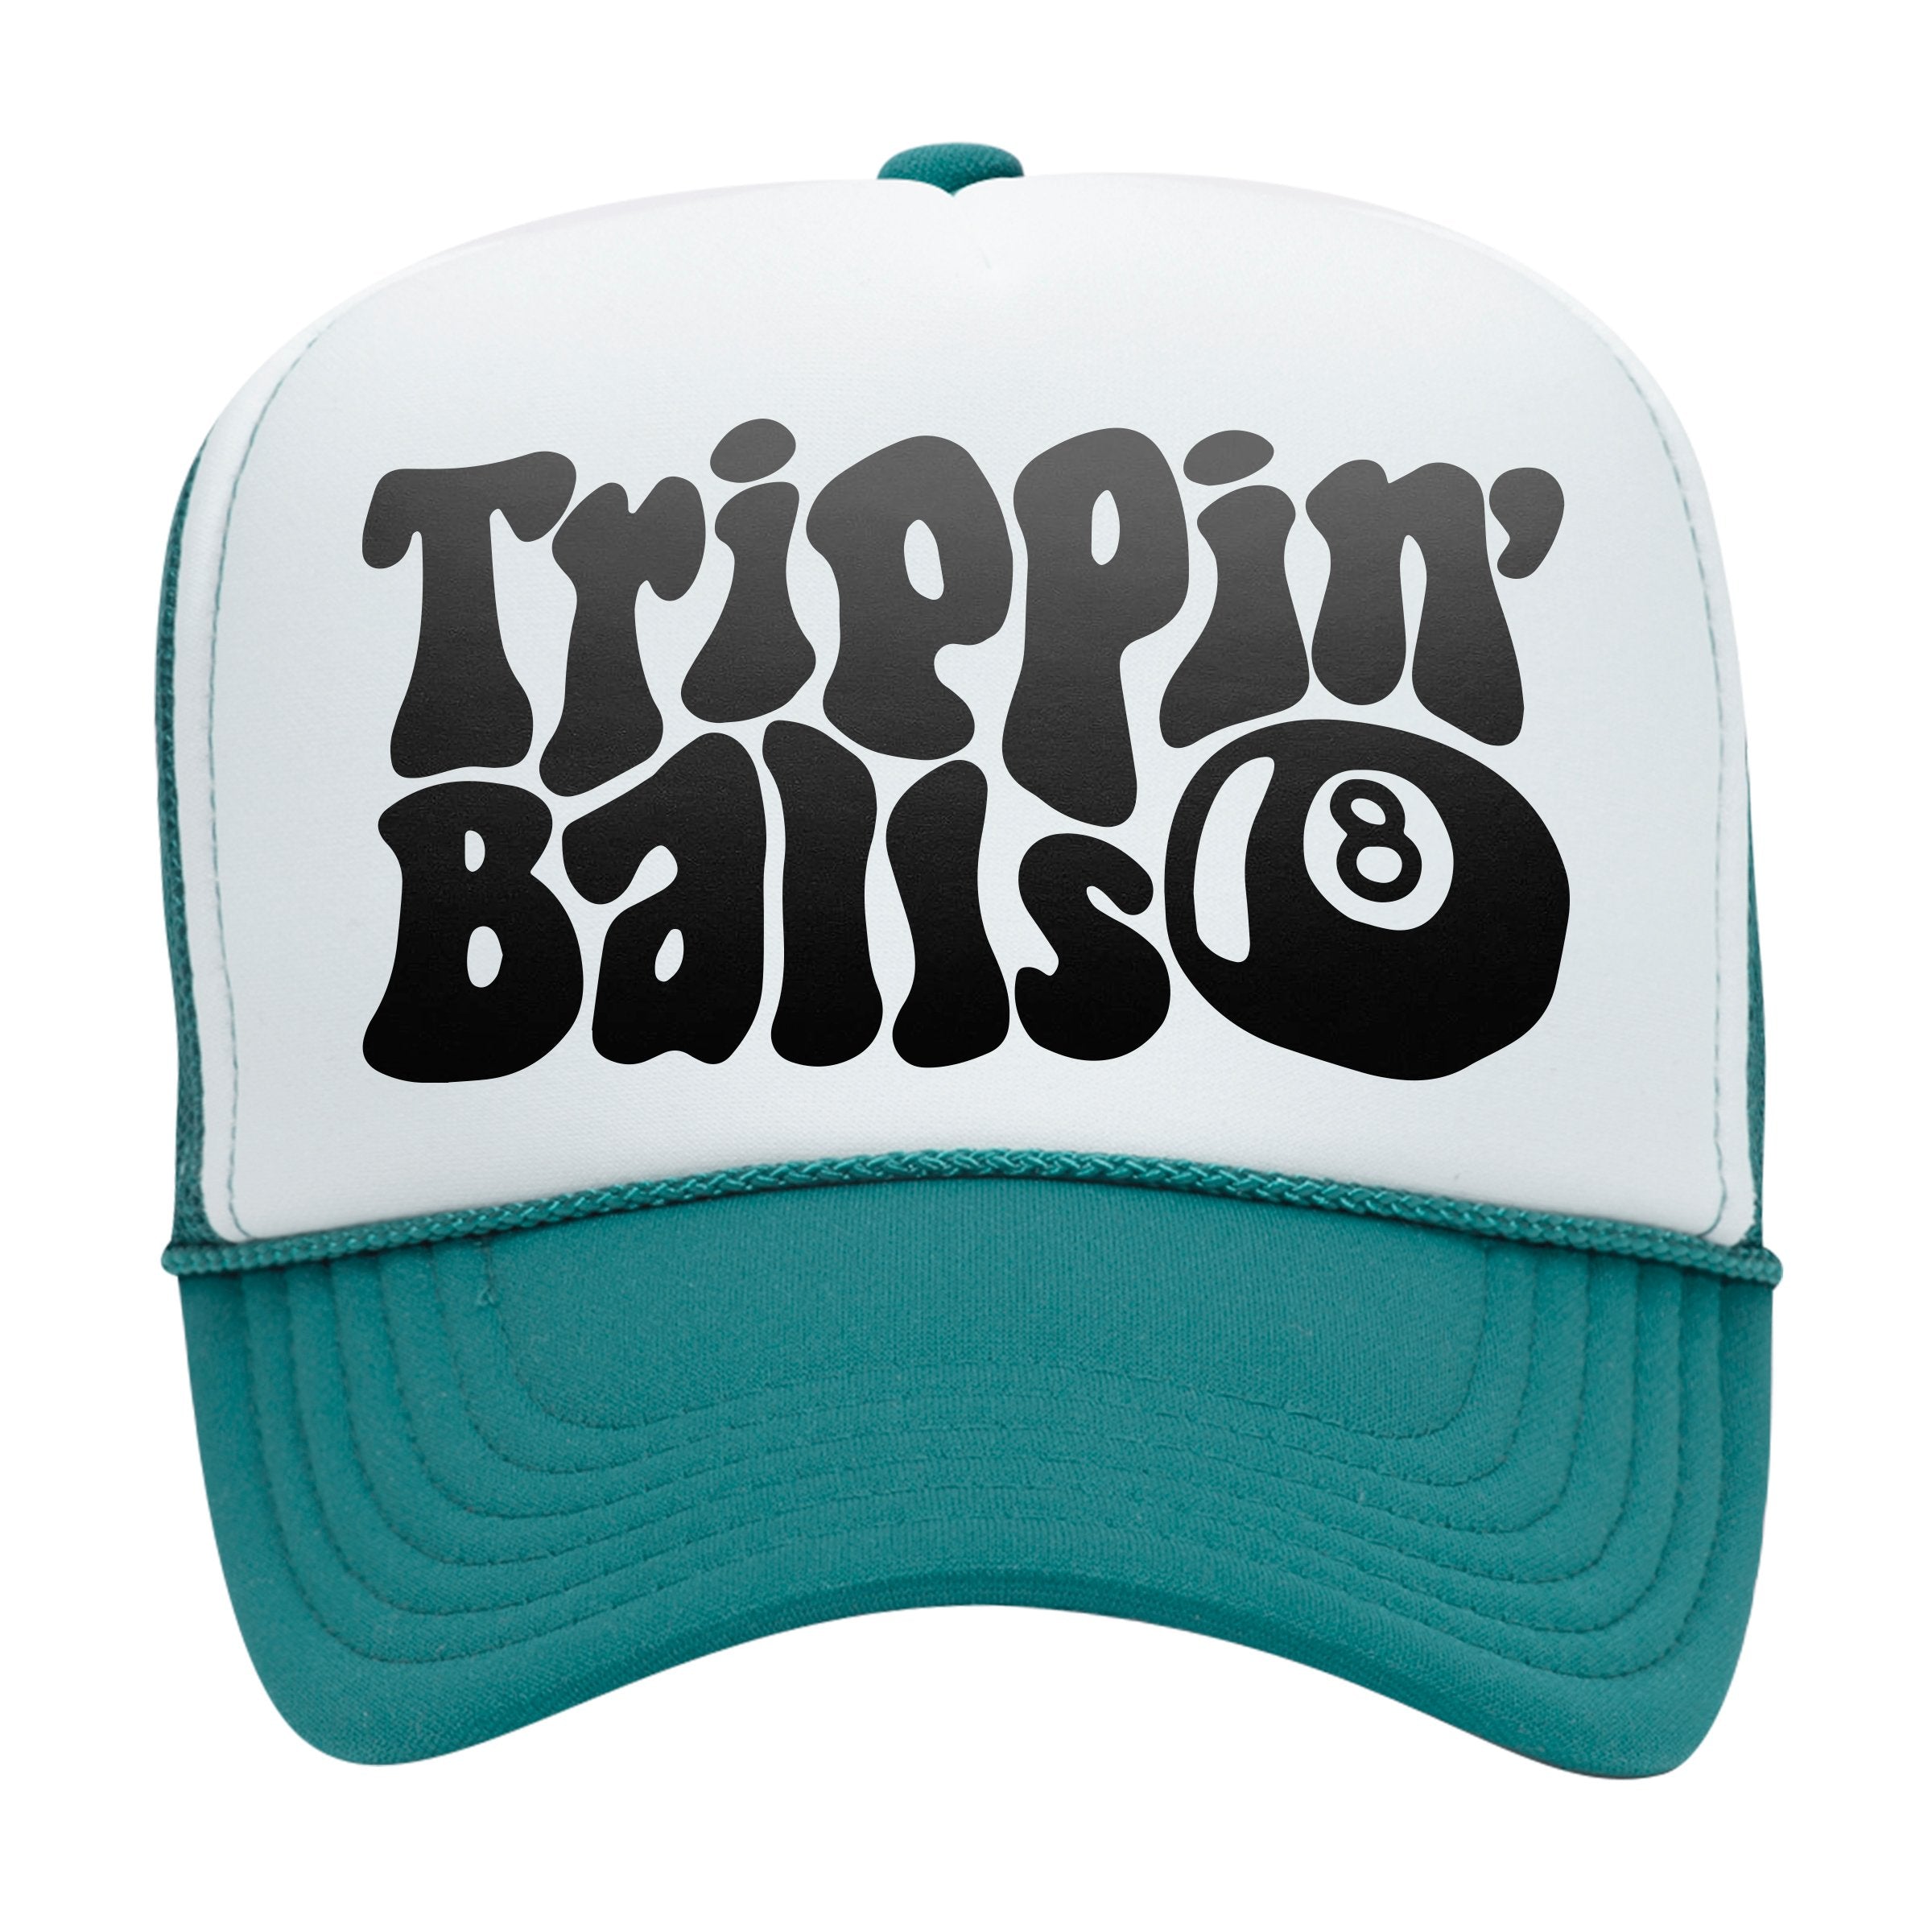 'TRIPPIN' BALLS' TRUCKER HAT